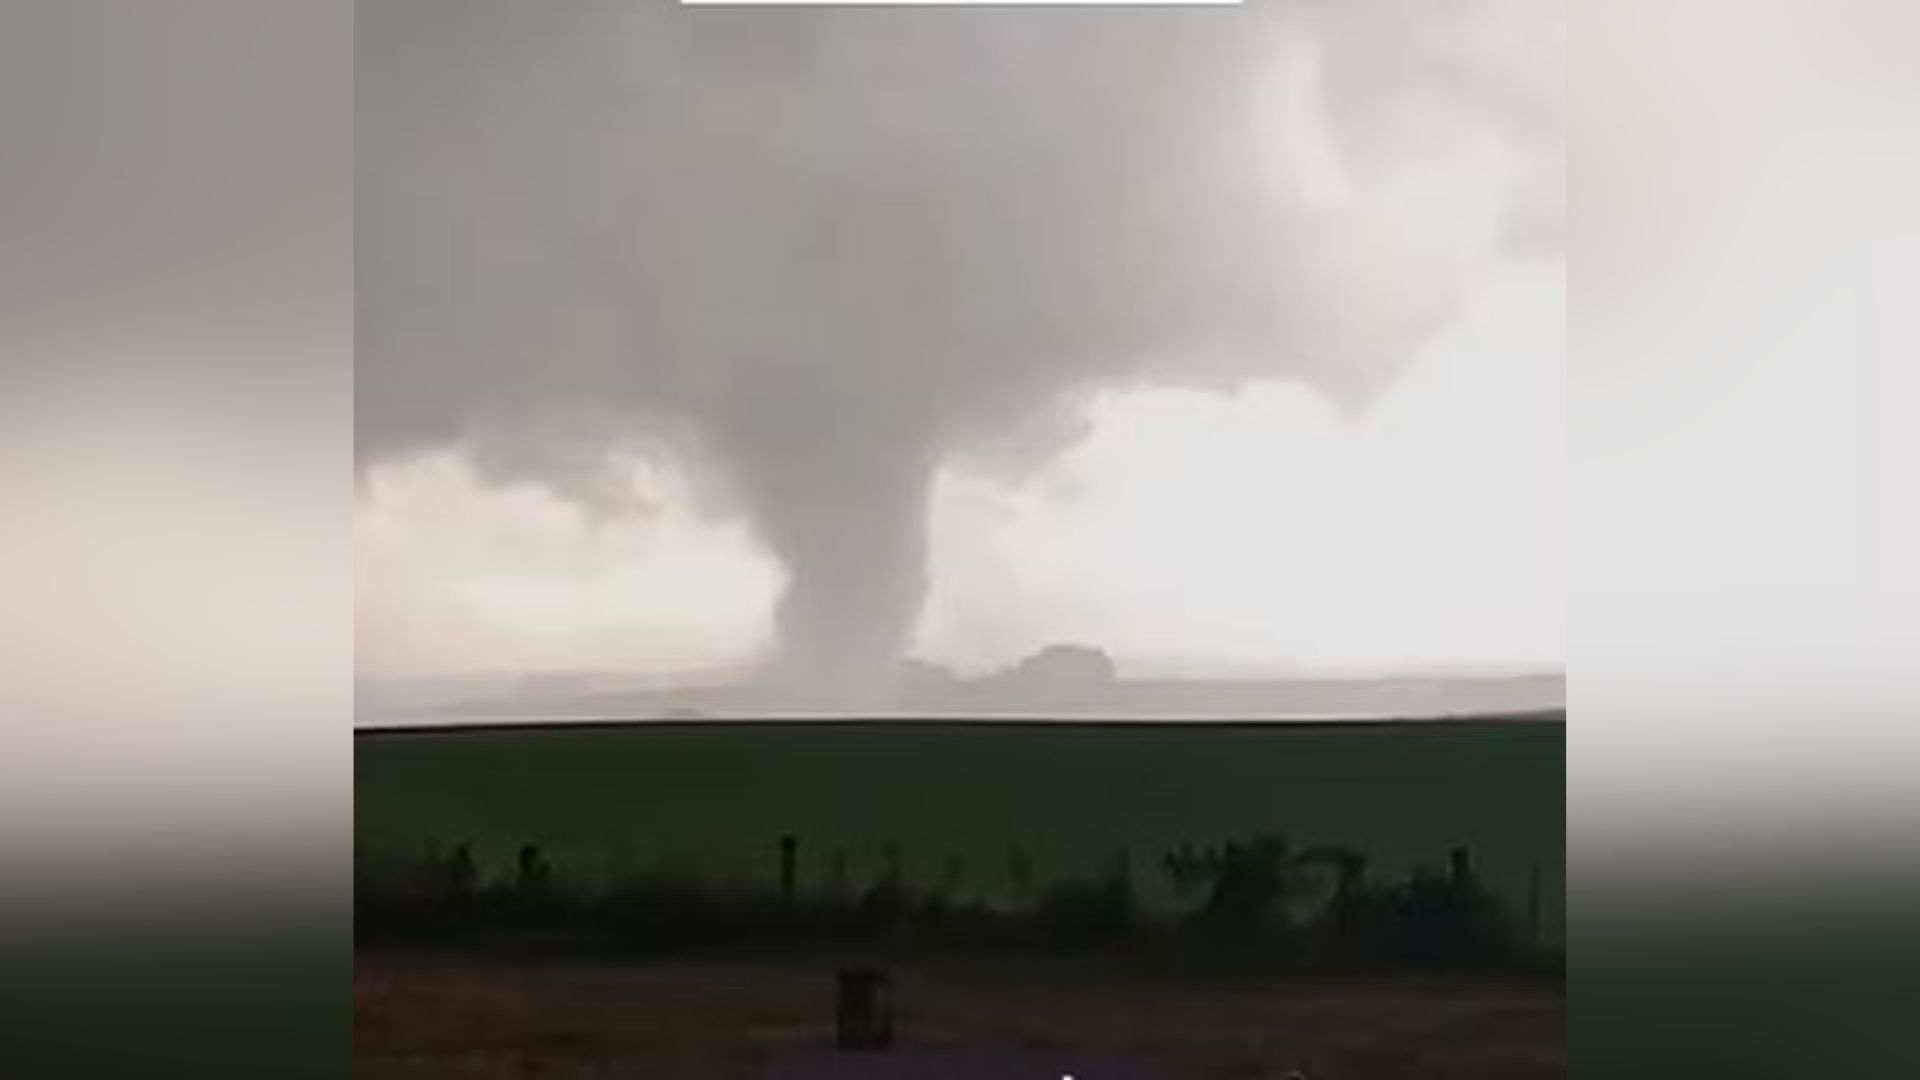 O tornado ocorreu em um sábado (27) de instabilidade atmosférica em uma região rural no Rio Grande do Sul